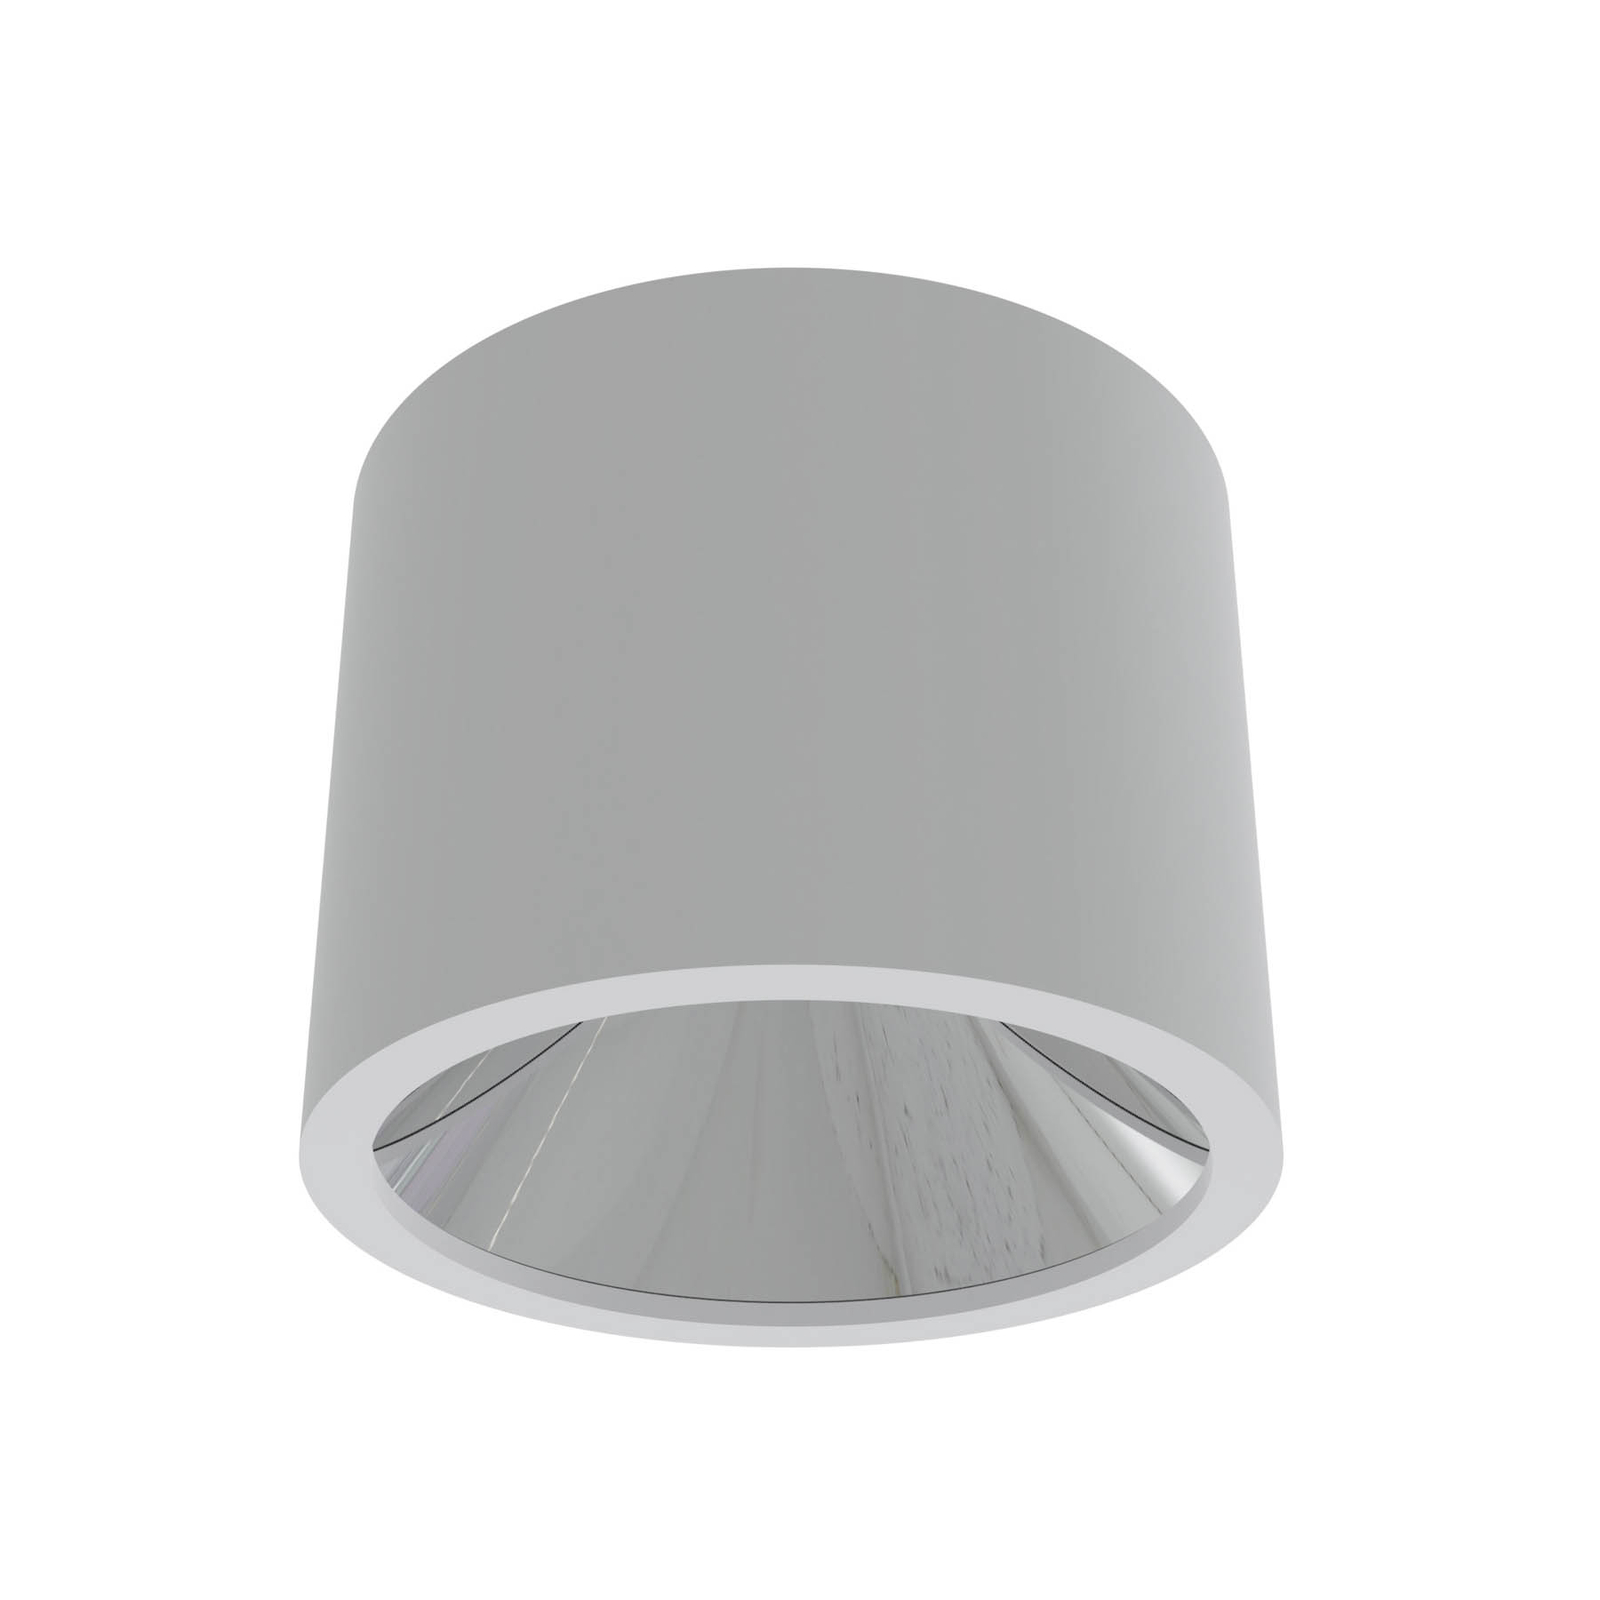 LED plafondspot ALG54, Ø 21,3 cm wit